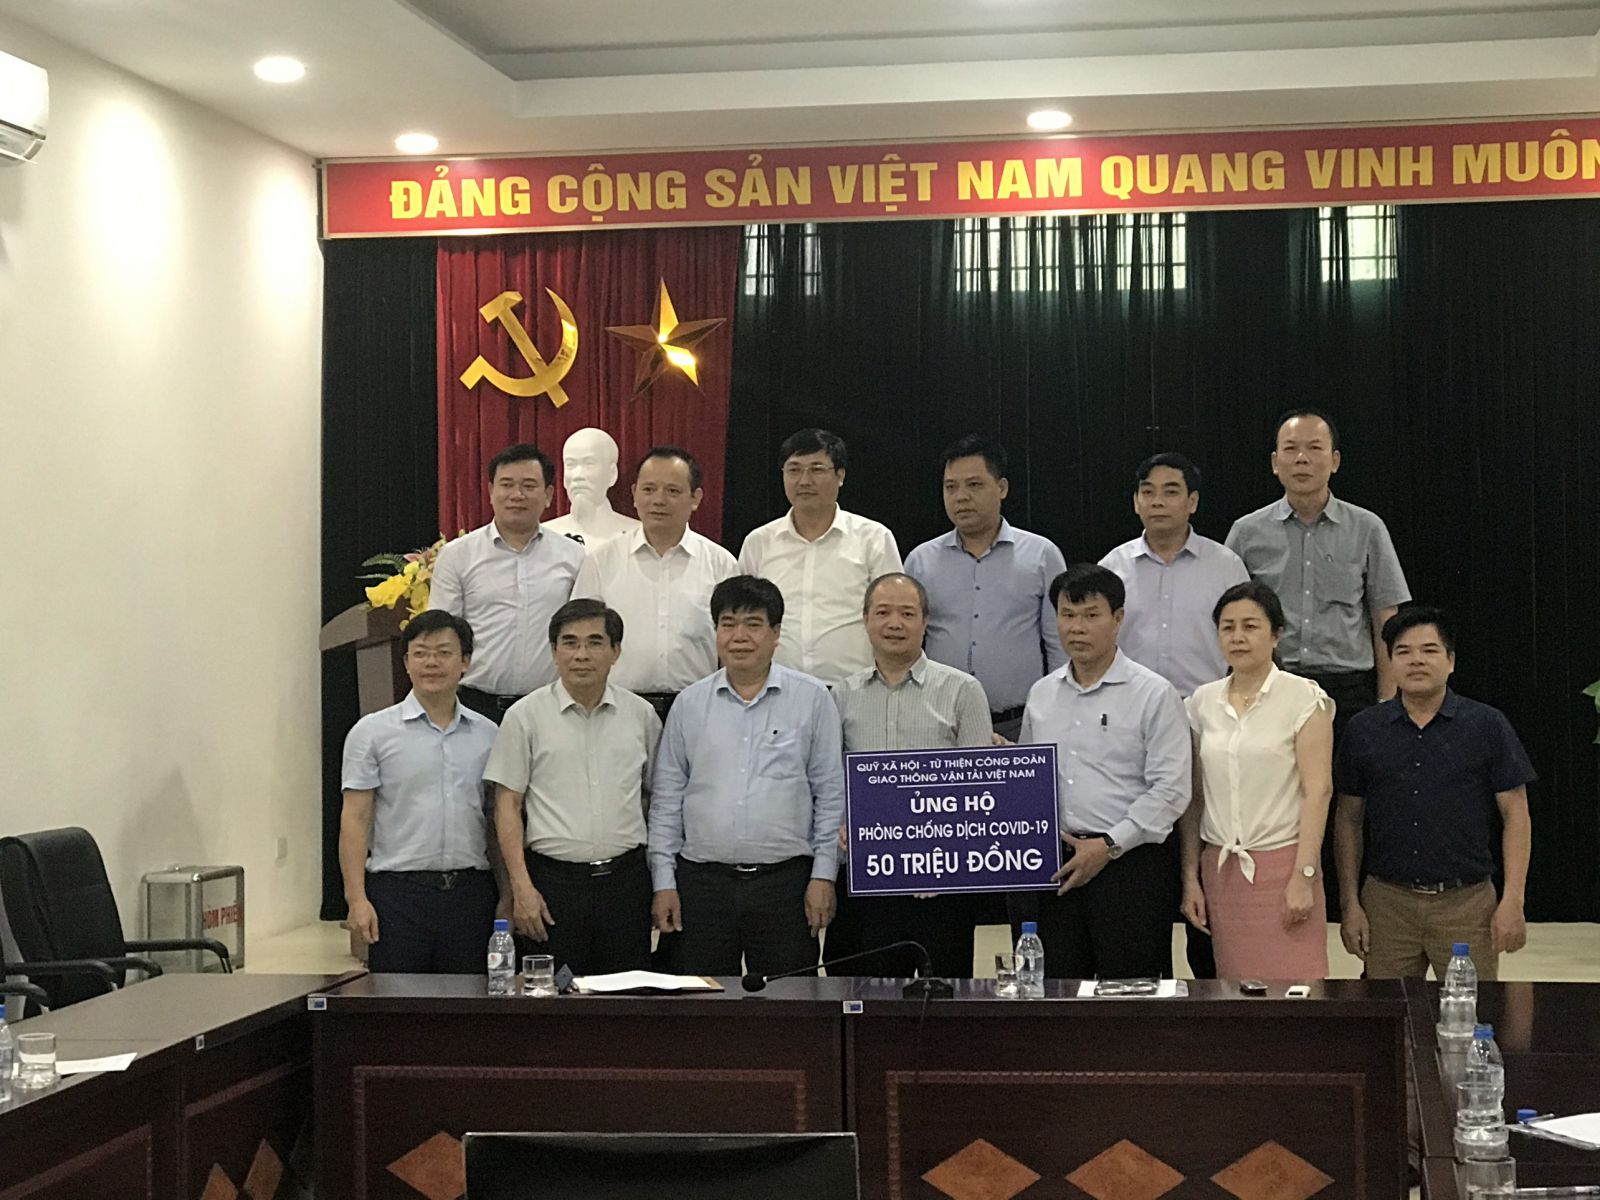 Quỹ Xã hội –Từ thiện Công đoàn GTVT Việt Nam trao tiền hỗ trợ cho Cục đường sắt VN, Công ty CP Vietravel để hỗ trợ CNVCLĐ